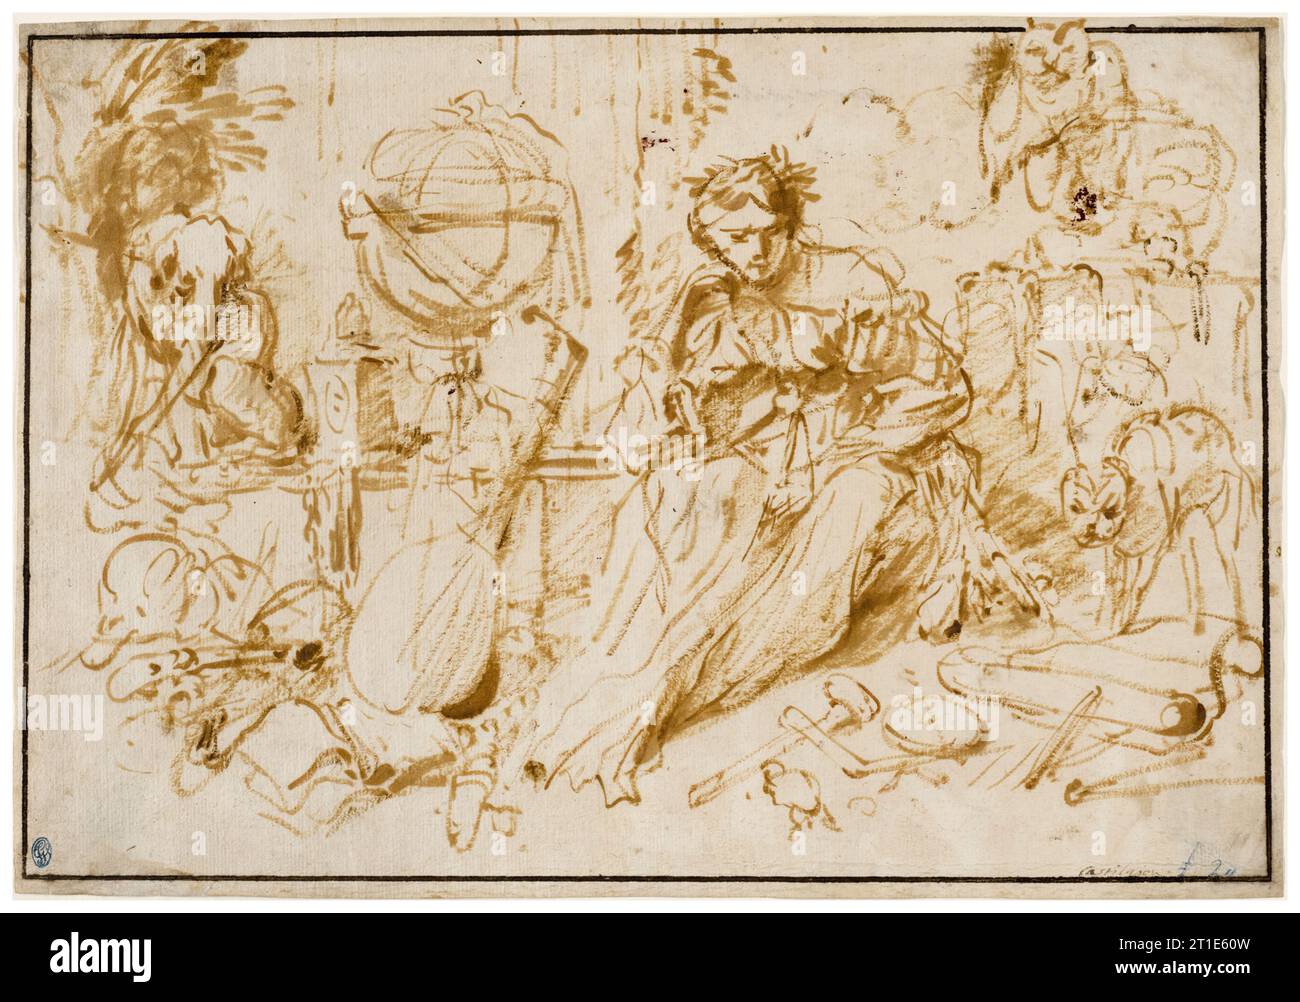 Giovanni Benedetto Castiglione detto il Grechetto, Melancholia, disegnato in pittura ad olio e pennello su carta beige, dopo il 1660 Foto Stock